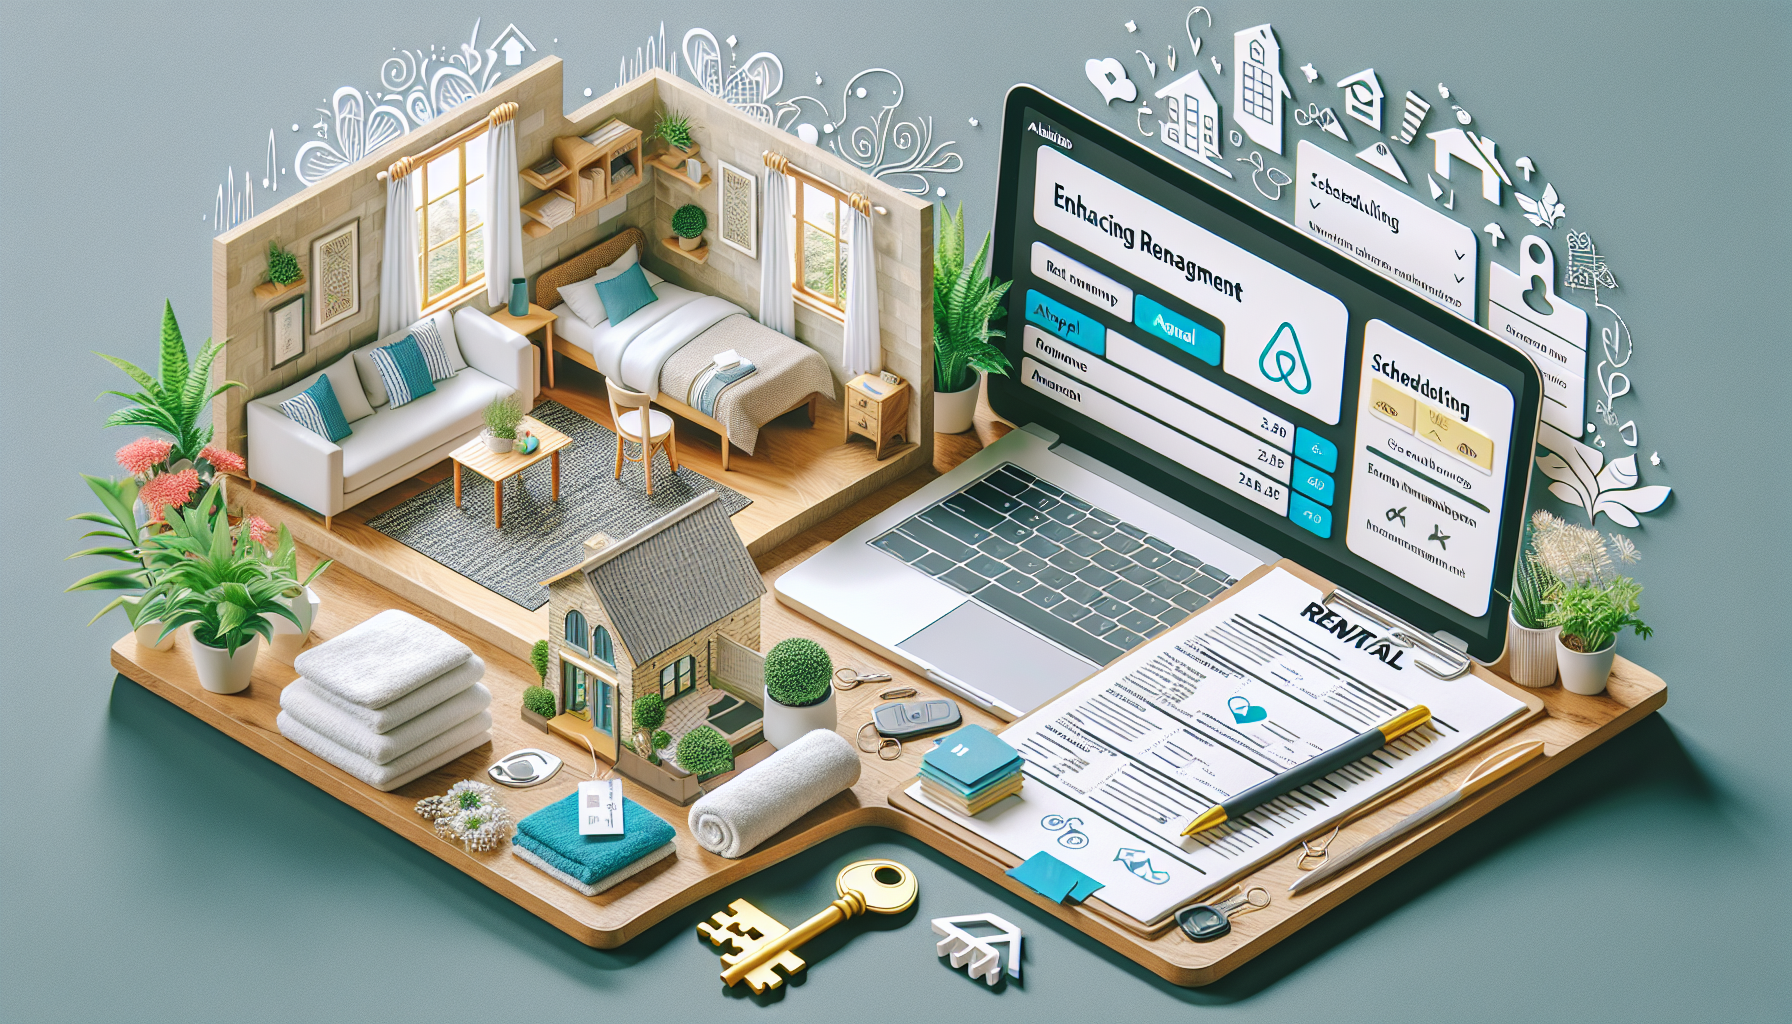 découvrez nos conseils pour optimiser la gestion locative sur airbnb et maximiser vos revenus avec efficacité.